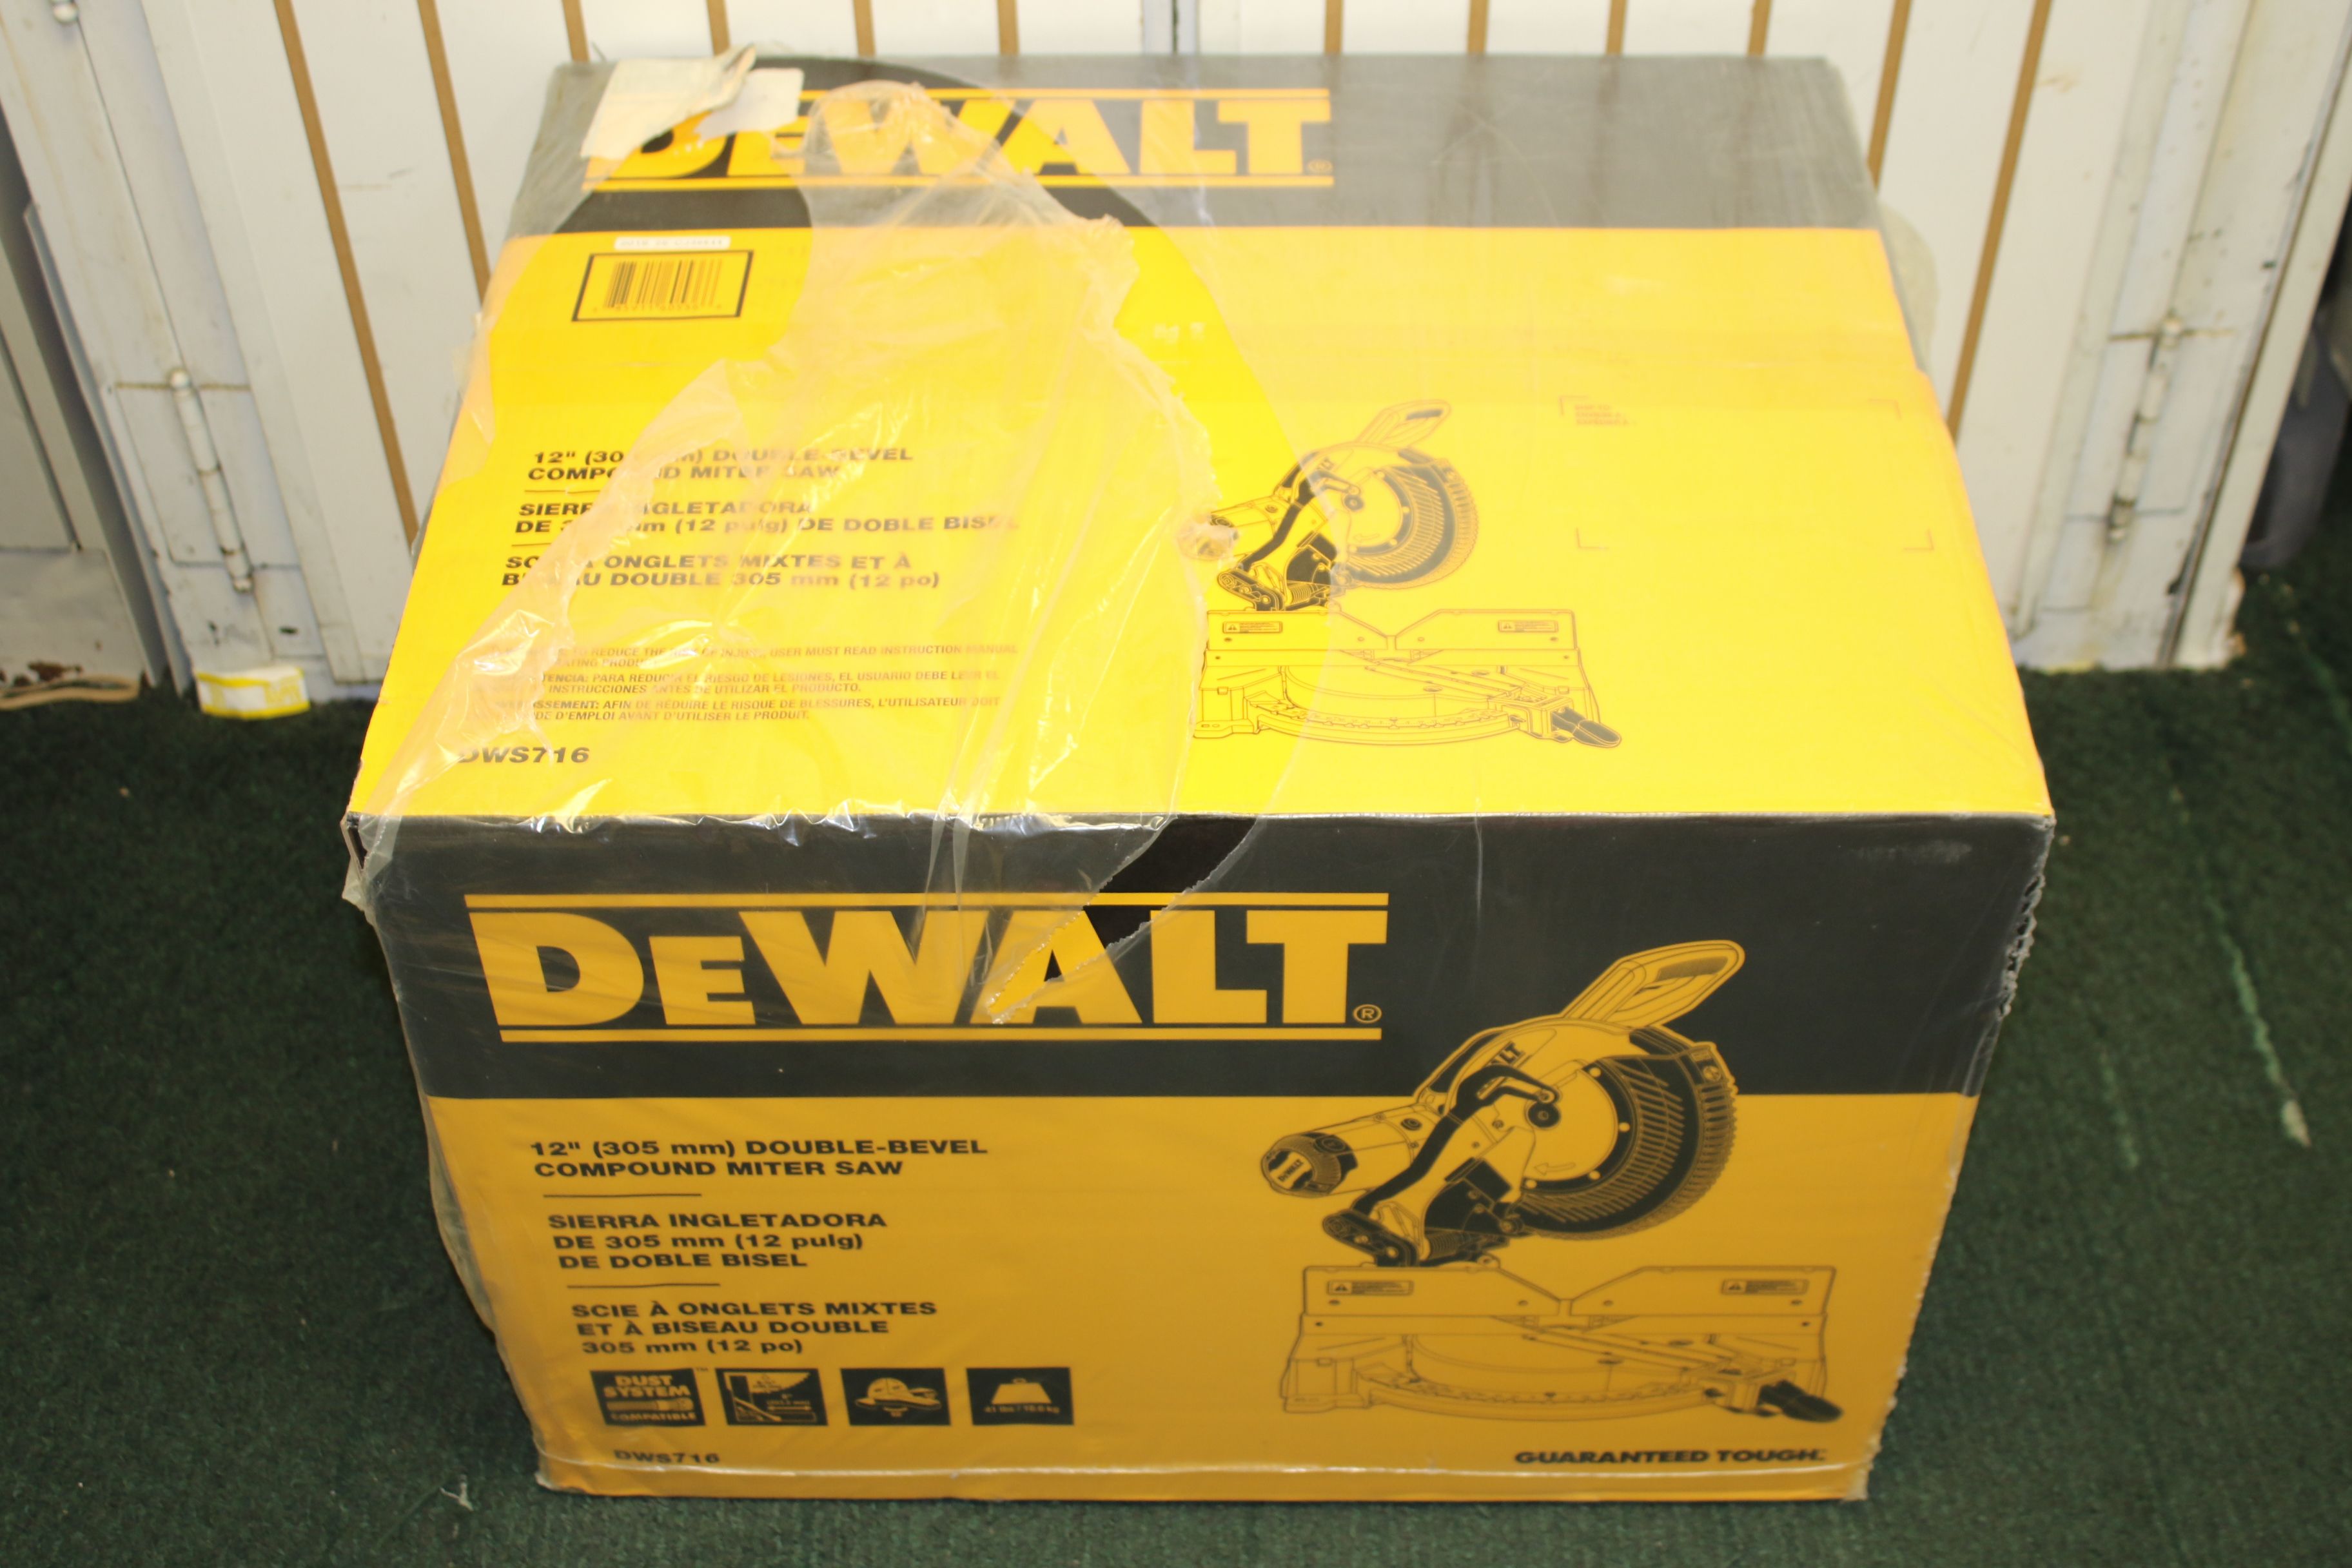 DeWalt DWS716 Double Bevel Compound Miter Saw